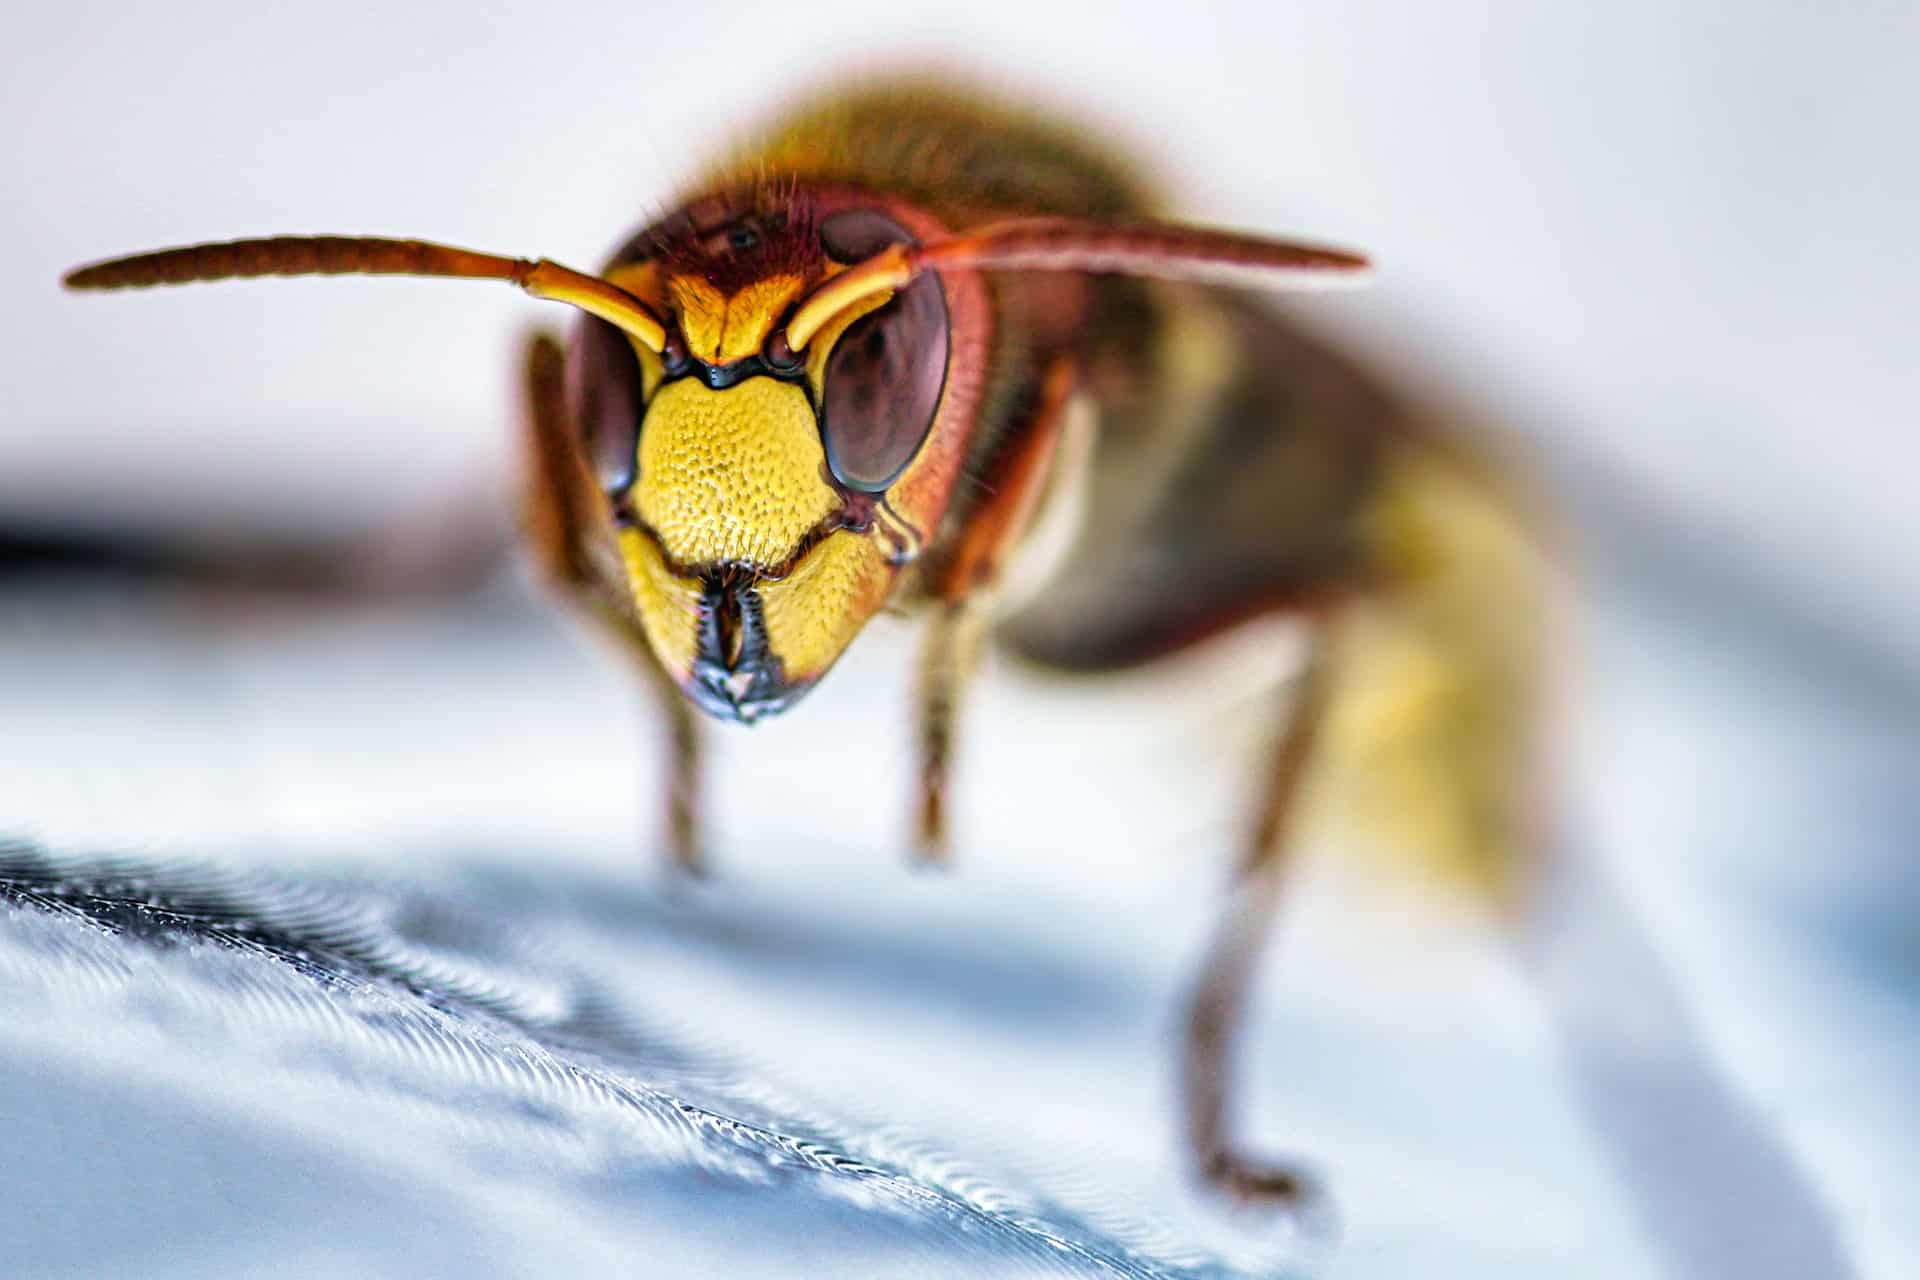 do hornets make honey